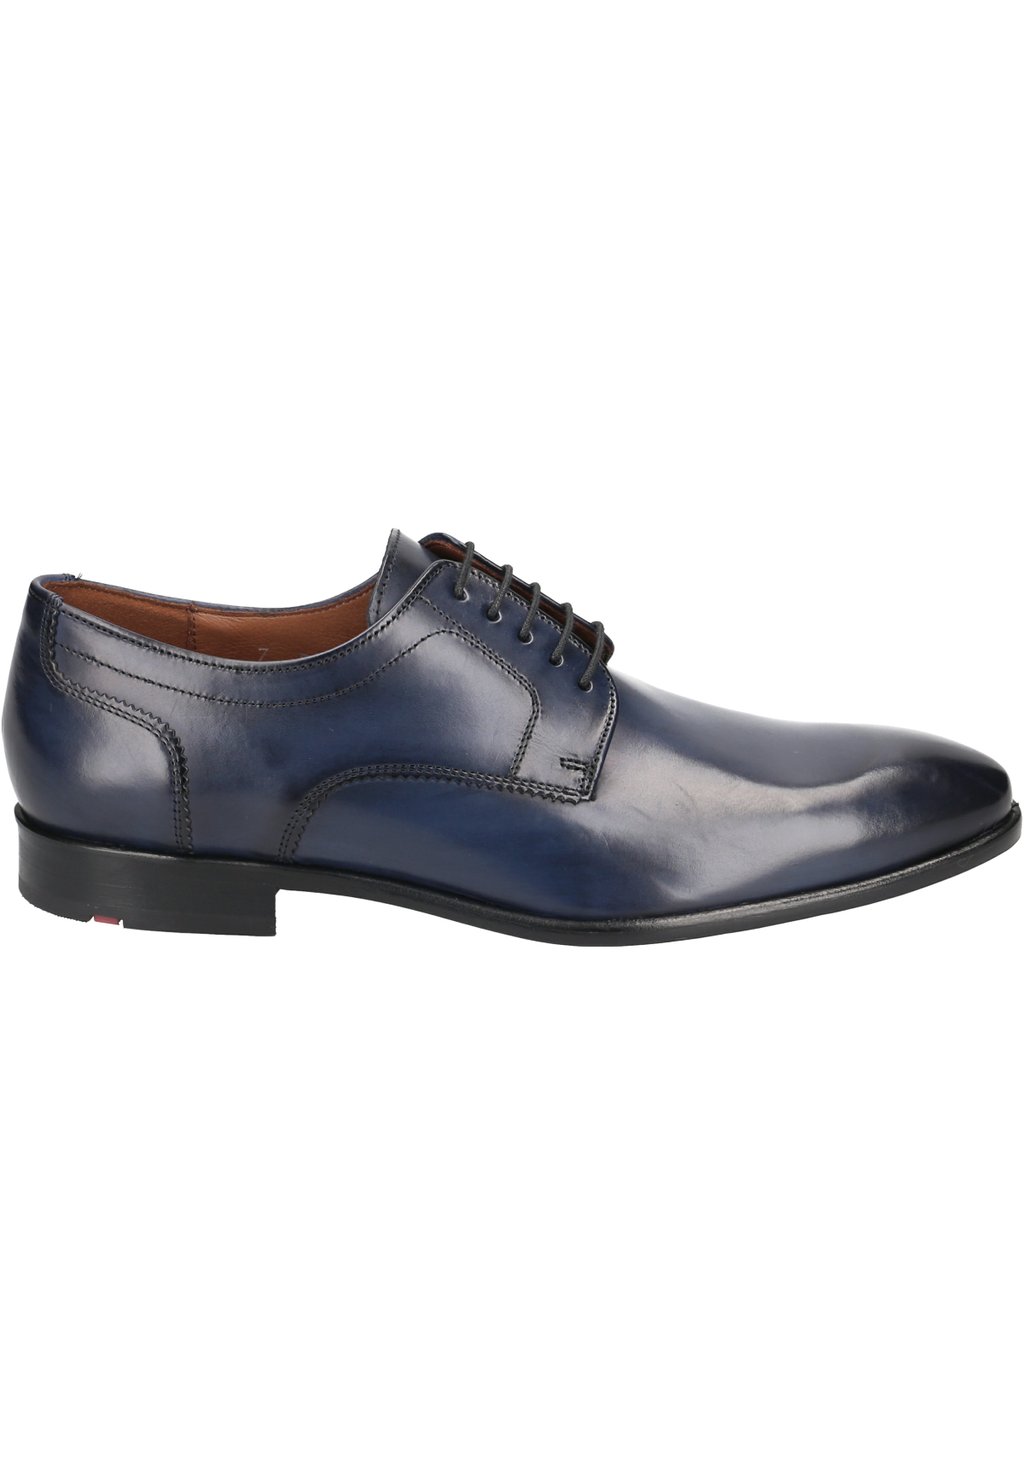 Деловые туфли на шнуровке PADOS Lloyd, цвет blau деловые туфли на шнуровке mare lloyd цвет braun